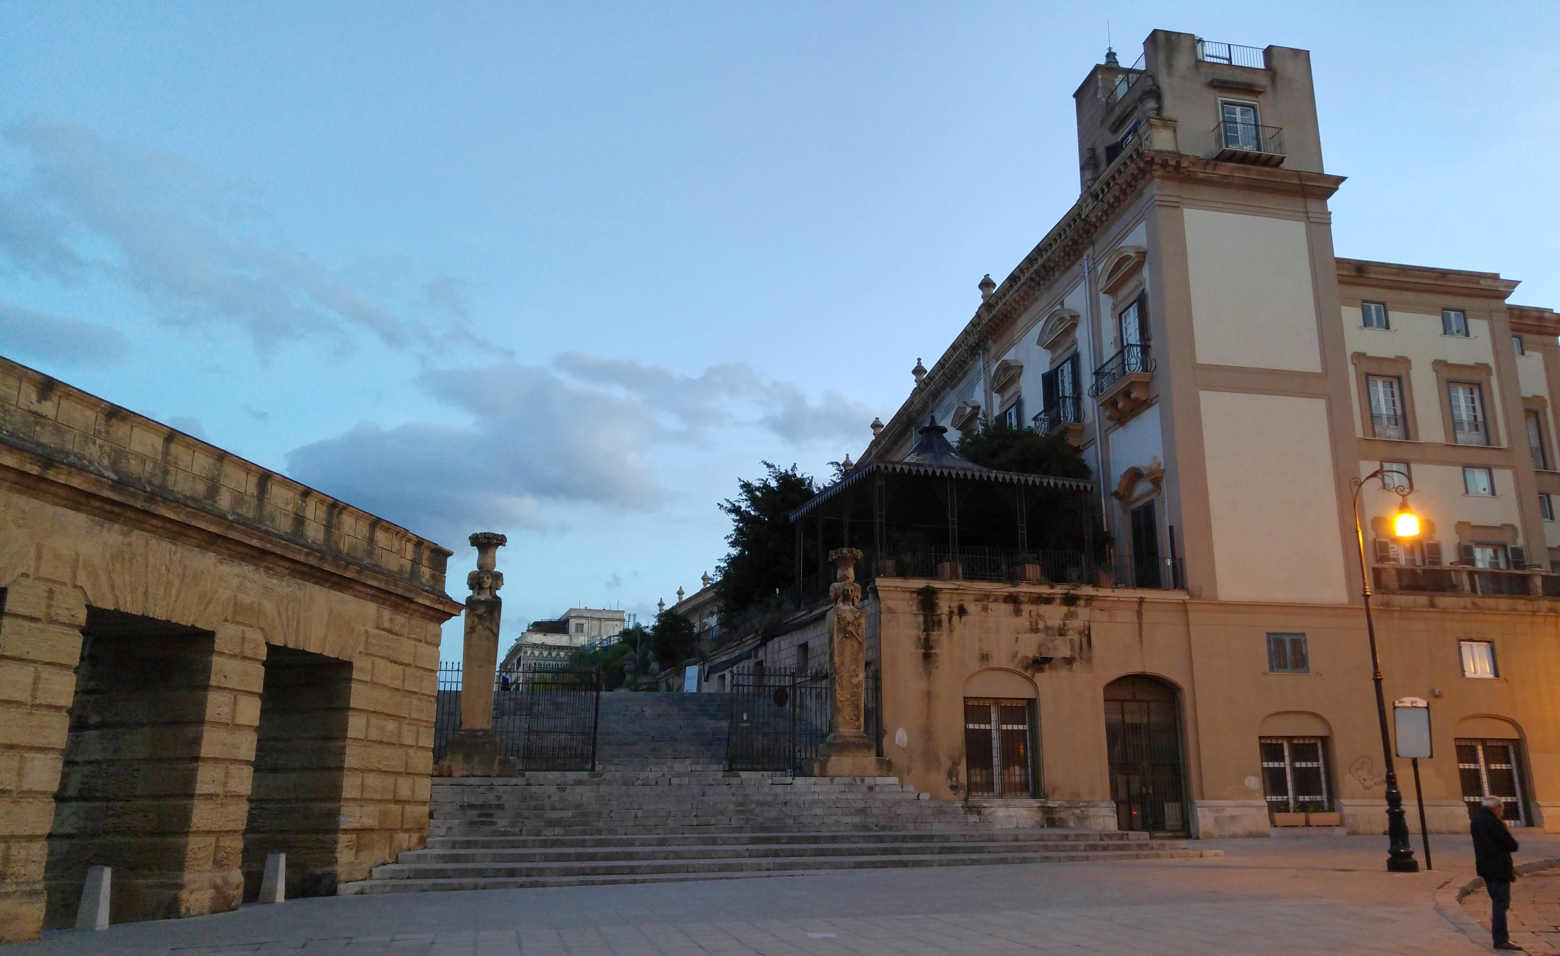 Passeggiata delle Cattive - la Piazza Santo Spirito y la escalera de las Mura delle Cattive